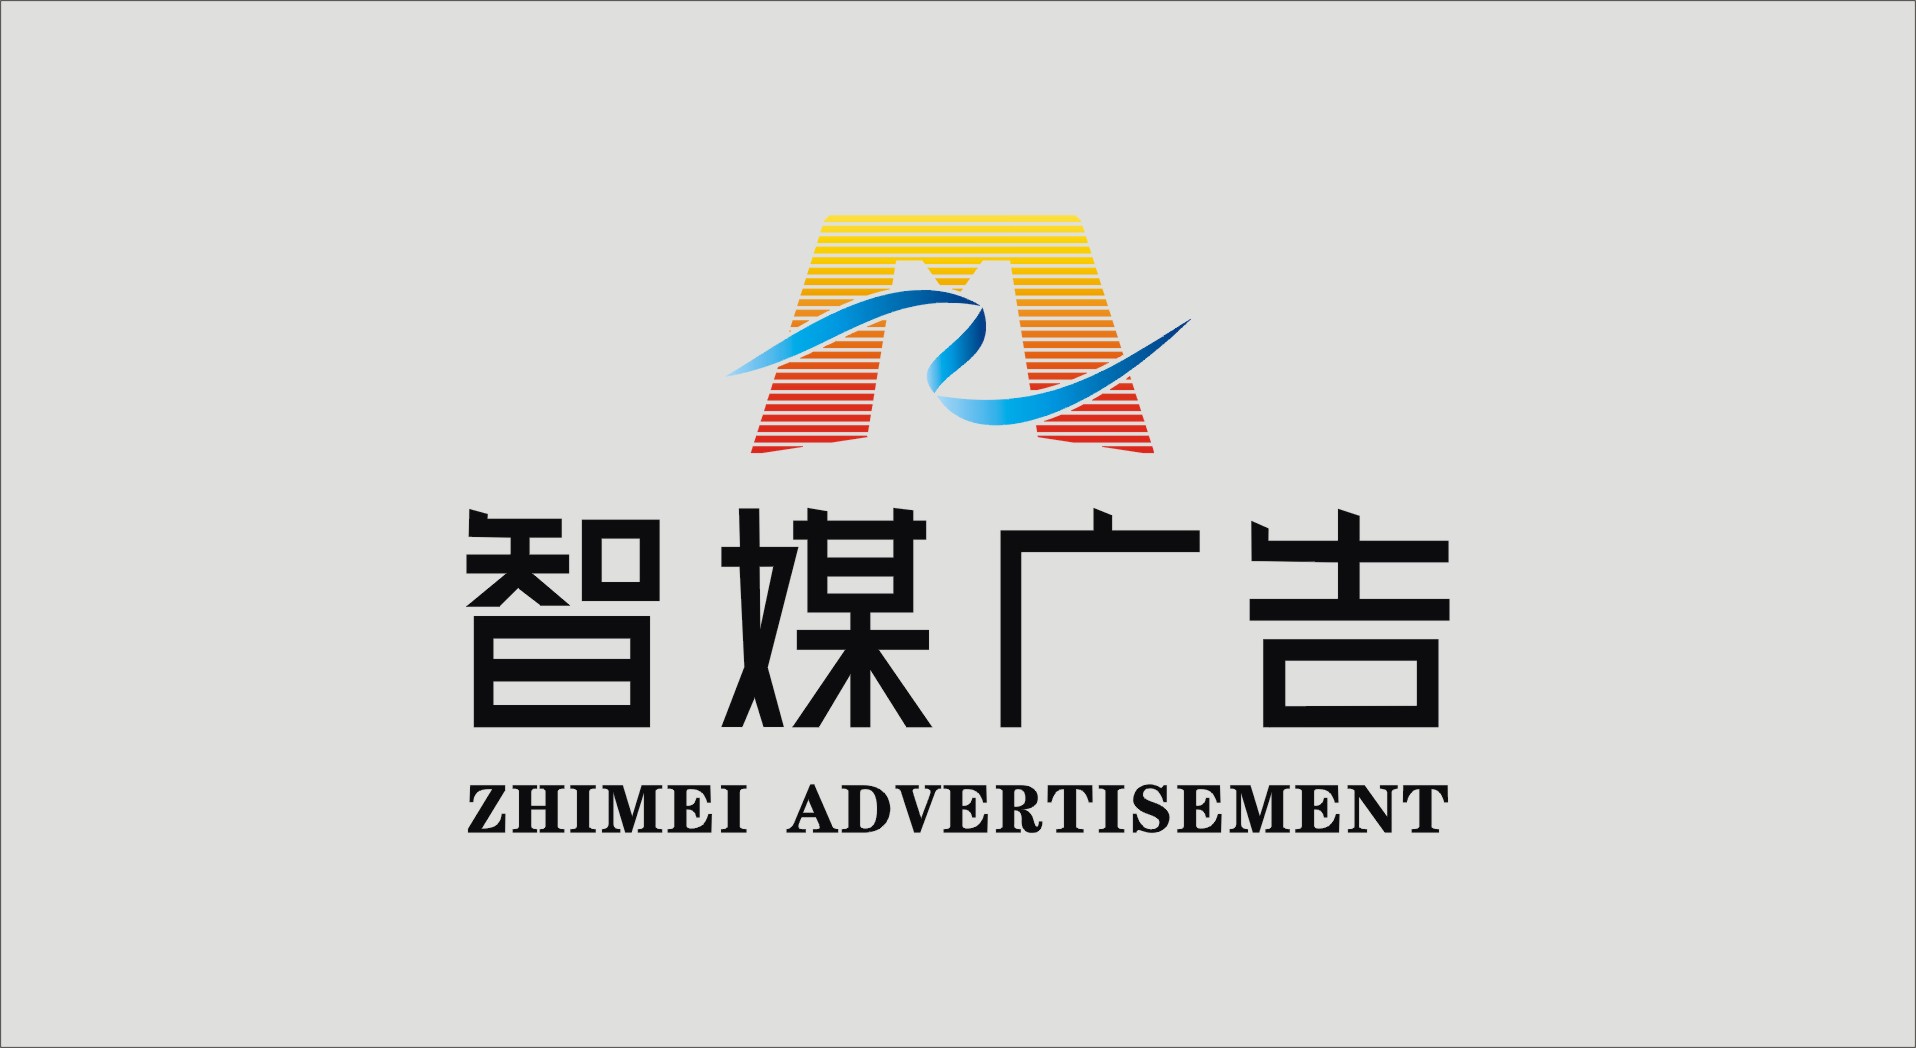 智媒广告(上海)有限公司设计logo!!!_400元_K68威客任务